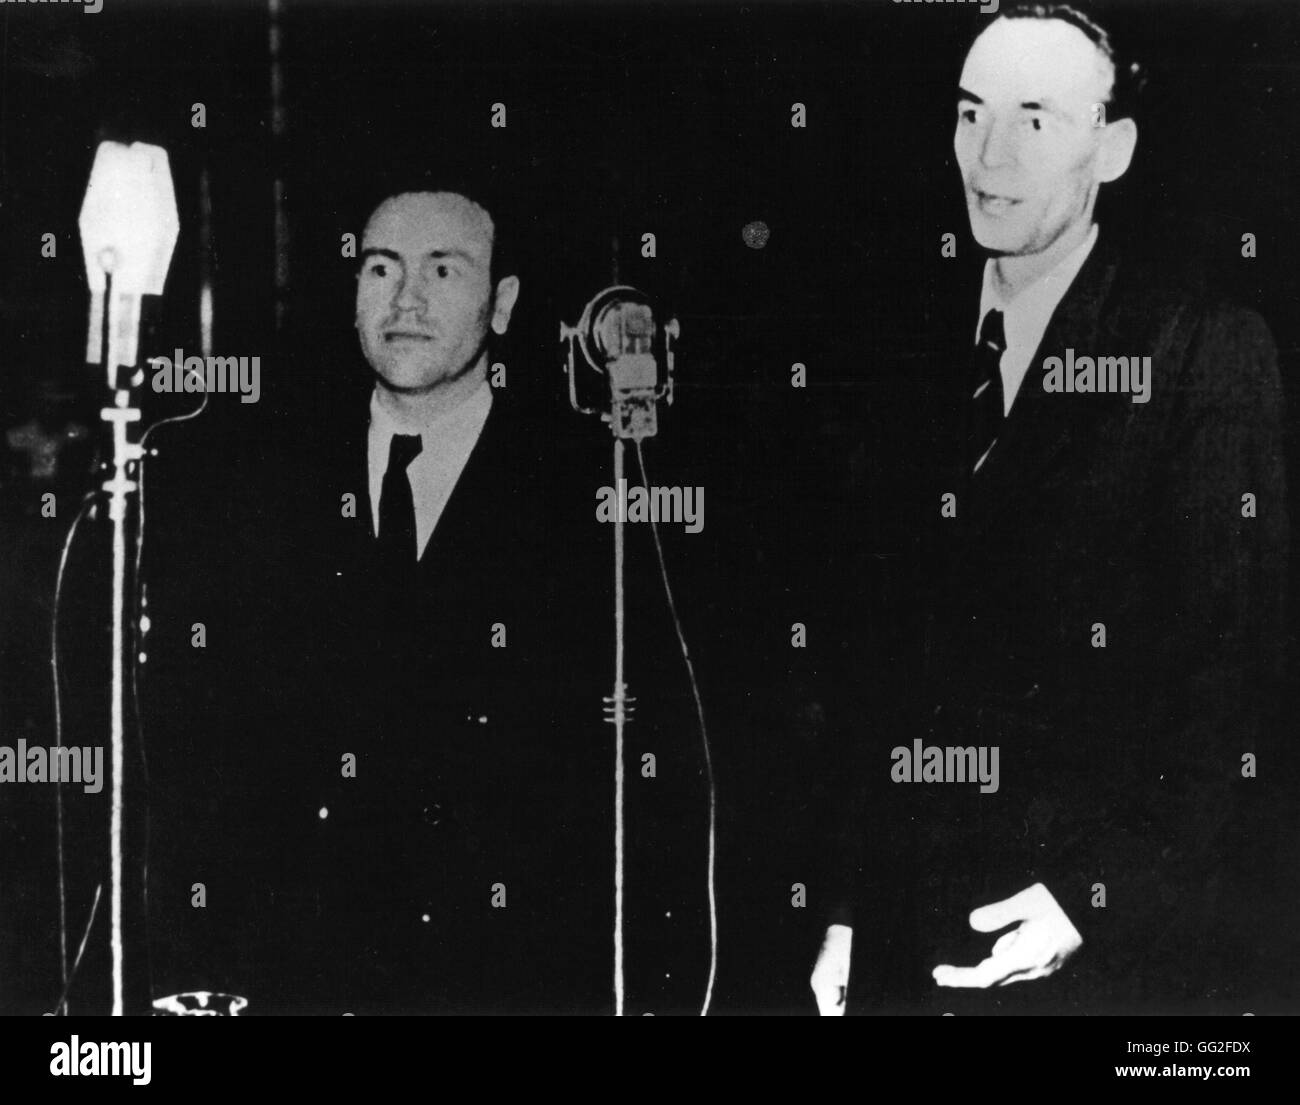 Versione di prova di Laszlo Rajk (a destra), in Ungheria il Primo Ministro. 1949. Caricato con 'titism' e spionaggio in Budapest, ha supplicato colpevole e fu impiccato. Foto Stock